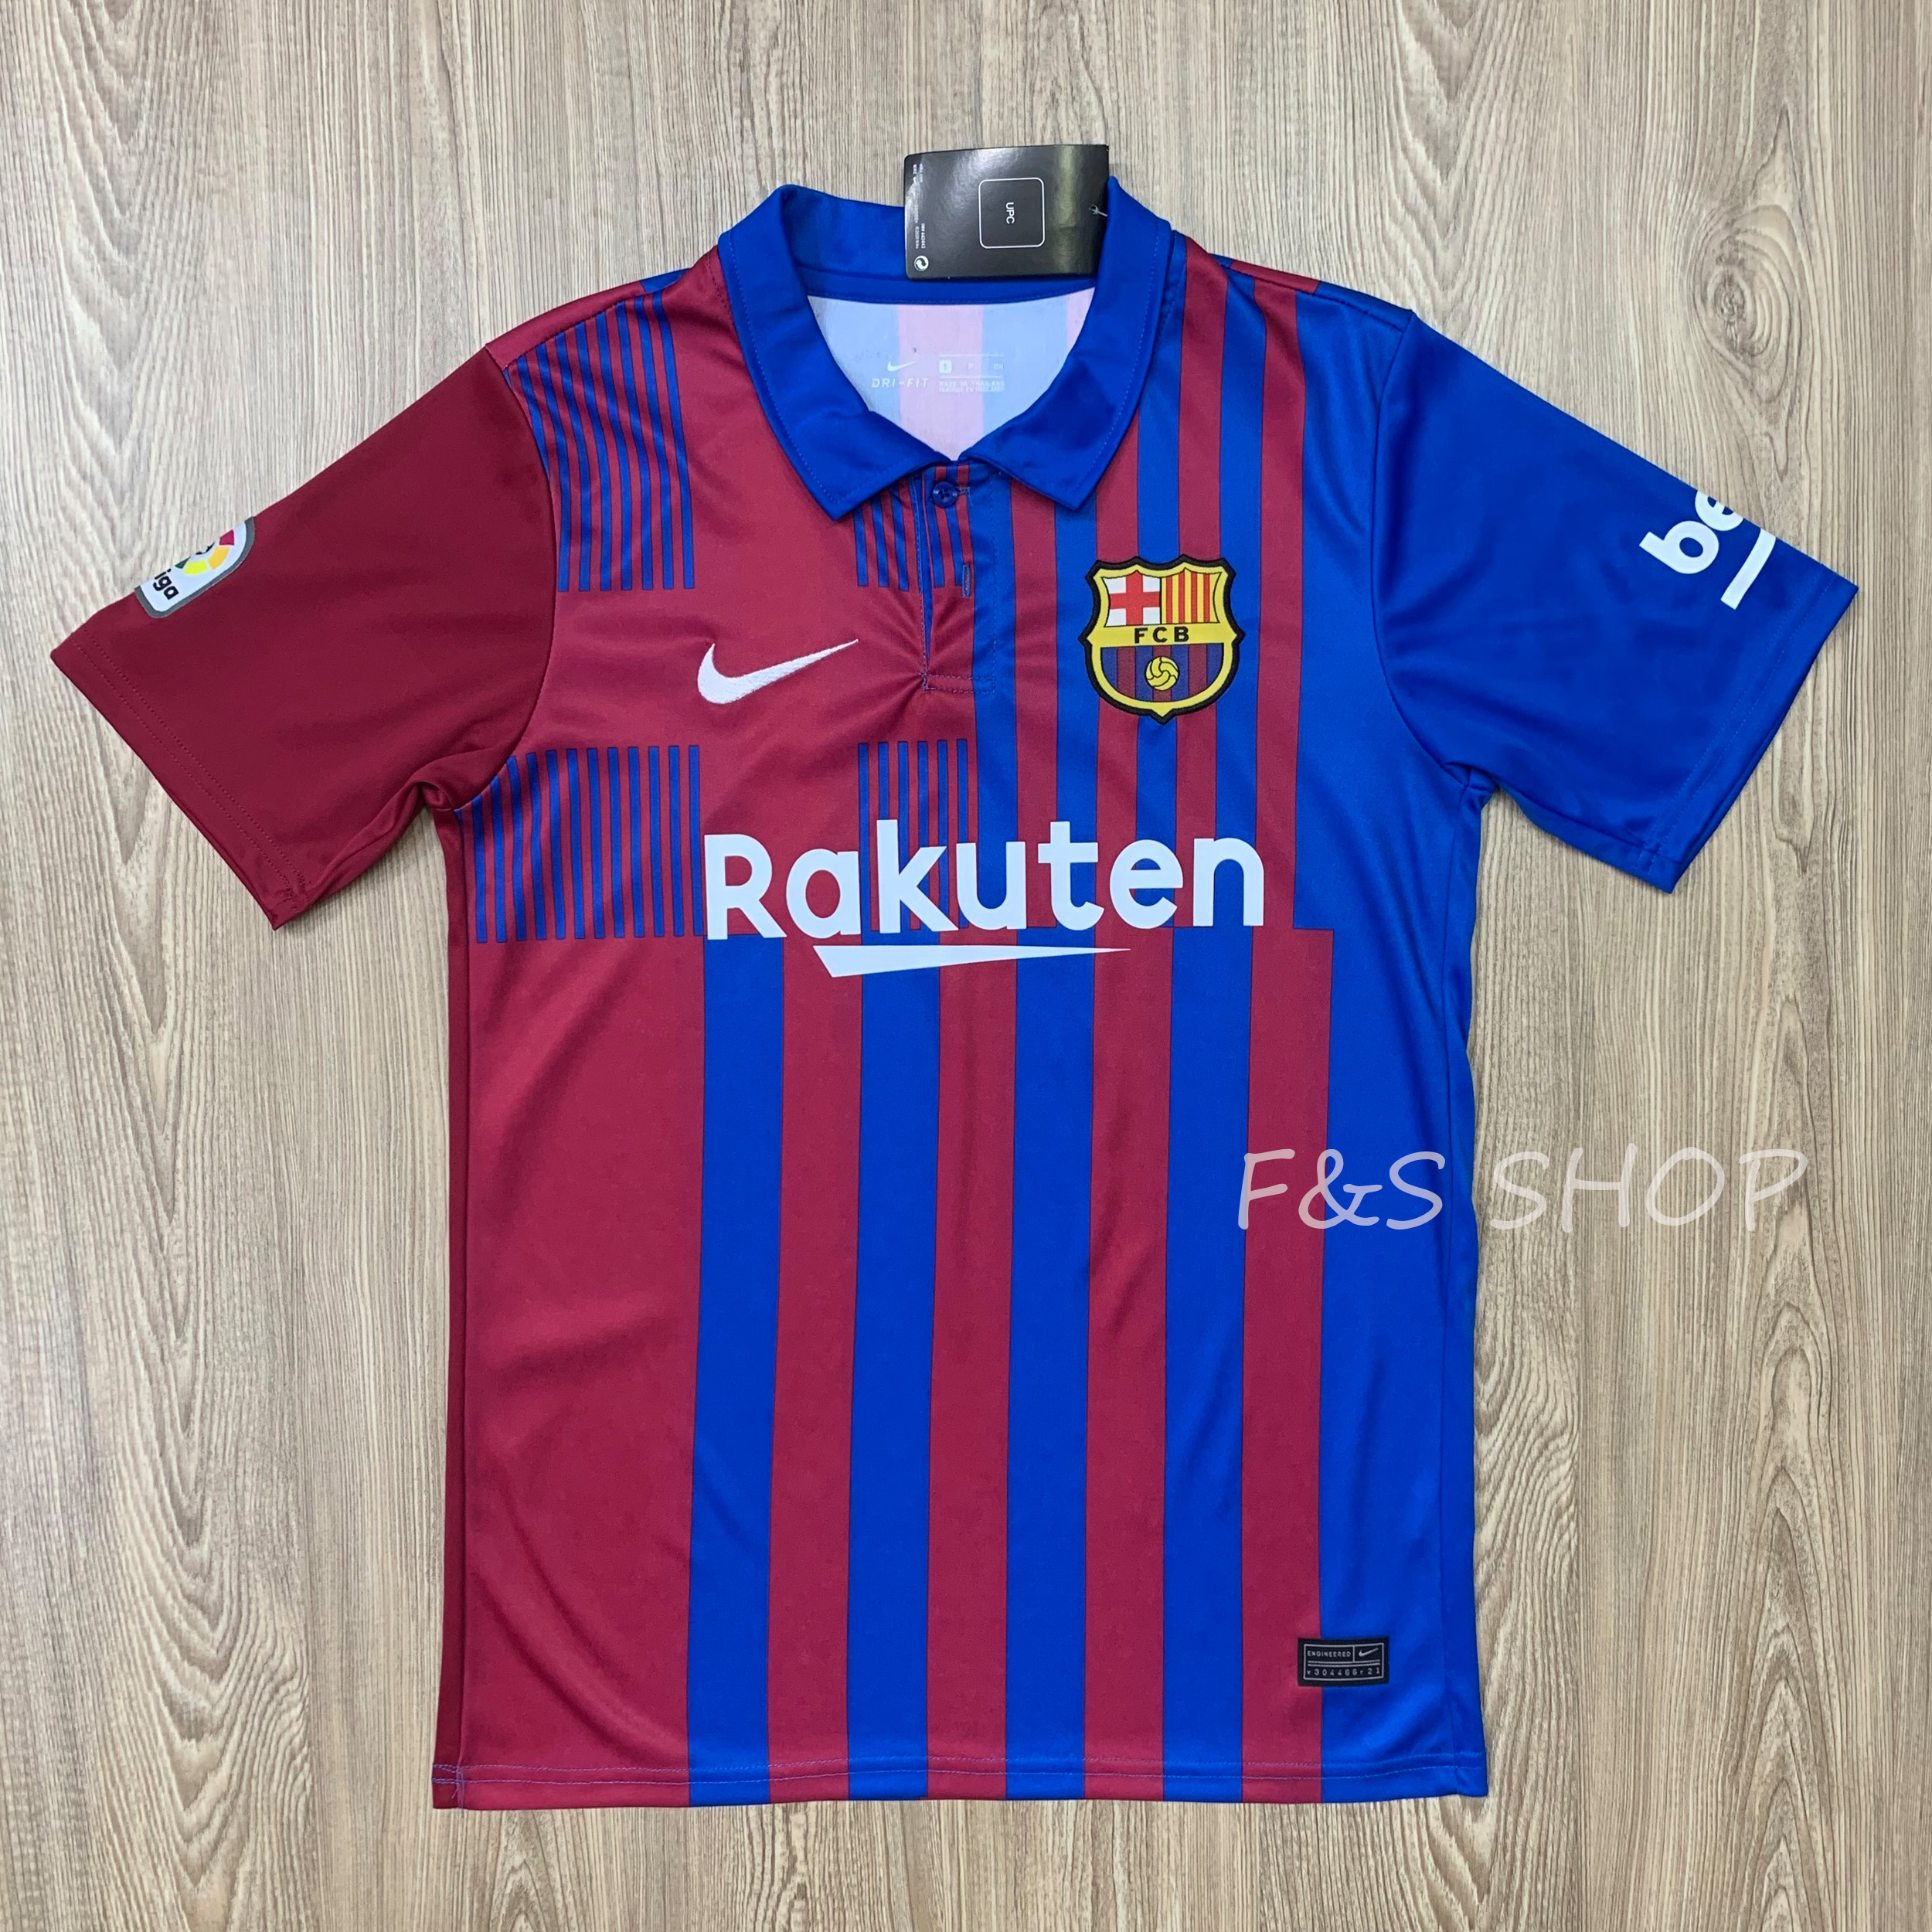 ล่าสุด! ฤดูกาล 2022 เสื้อสโมสรฟุตบอล เสื้อคอปก เสื้อกีฬาผู้ชาย ทีม Barcelona ปี 22 ( บาซ่า) เสื้อบอล เสื้อกีฬา ใส่สบาย ผ้ายืด งานเกรด A